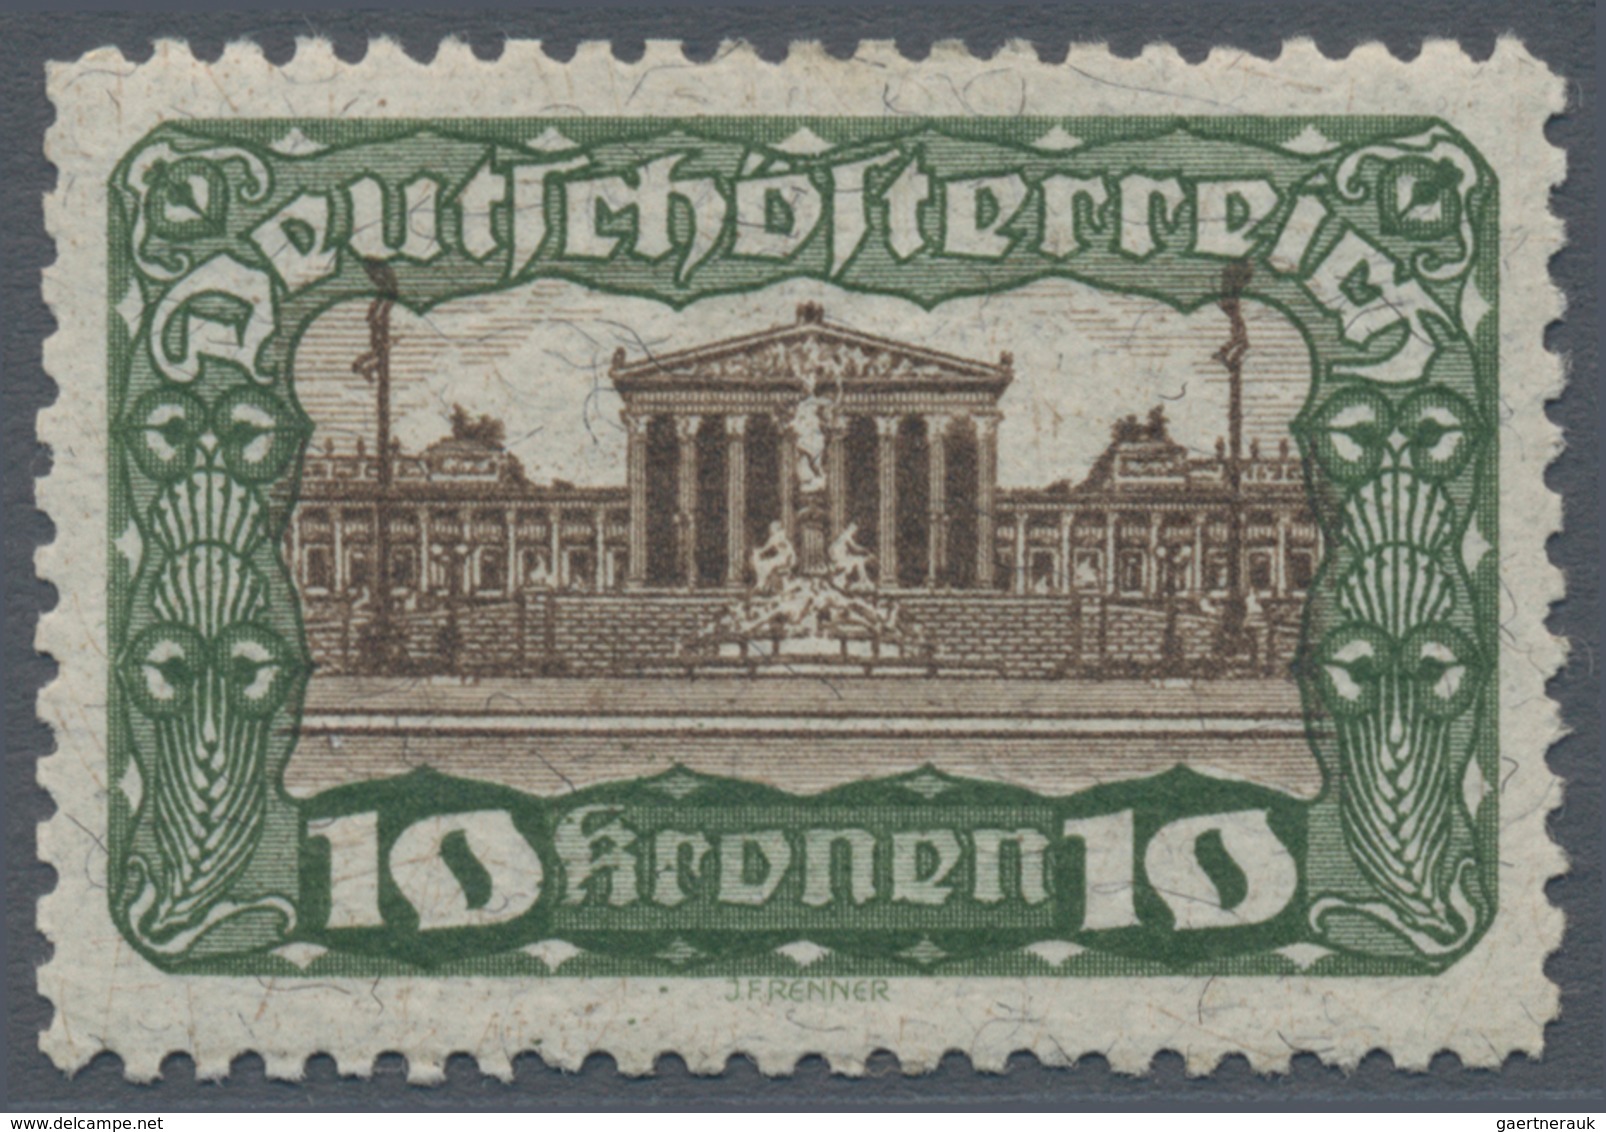 Österreich: 1919/1921, Freimarken "Parlamentsgebäude", alle acht Werte in Linienzähnung 11½, postfri